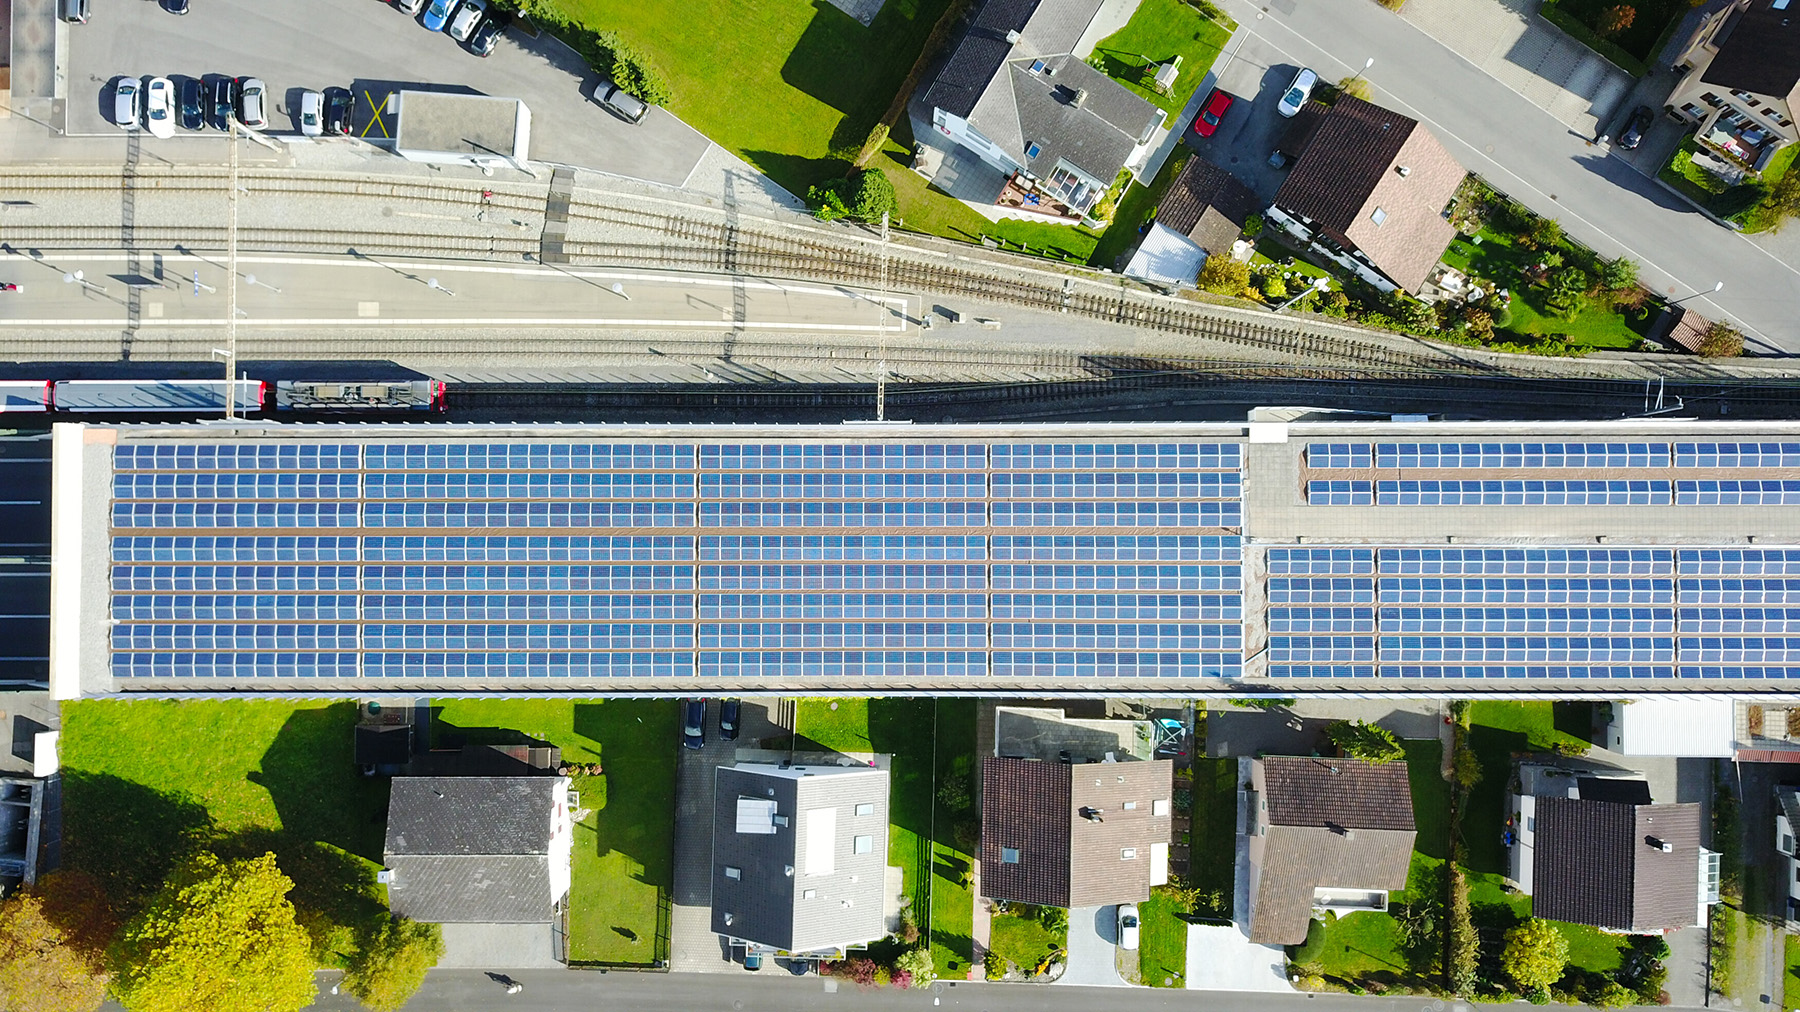 Autobahnüberdachung von Stansstad | © Plan E AG